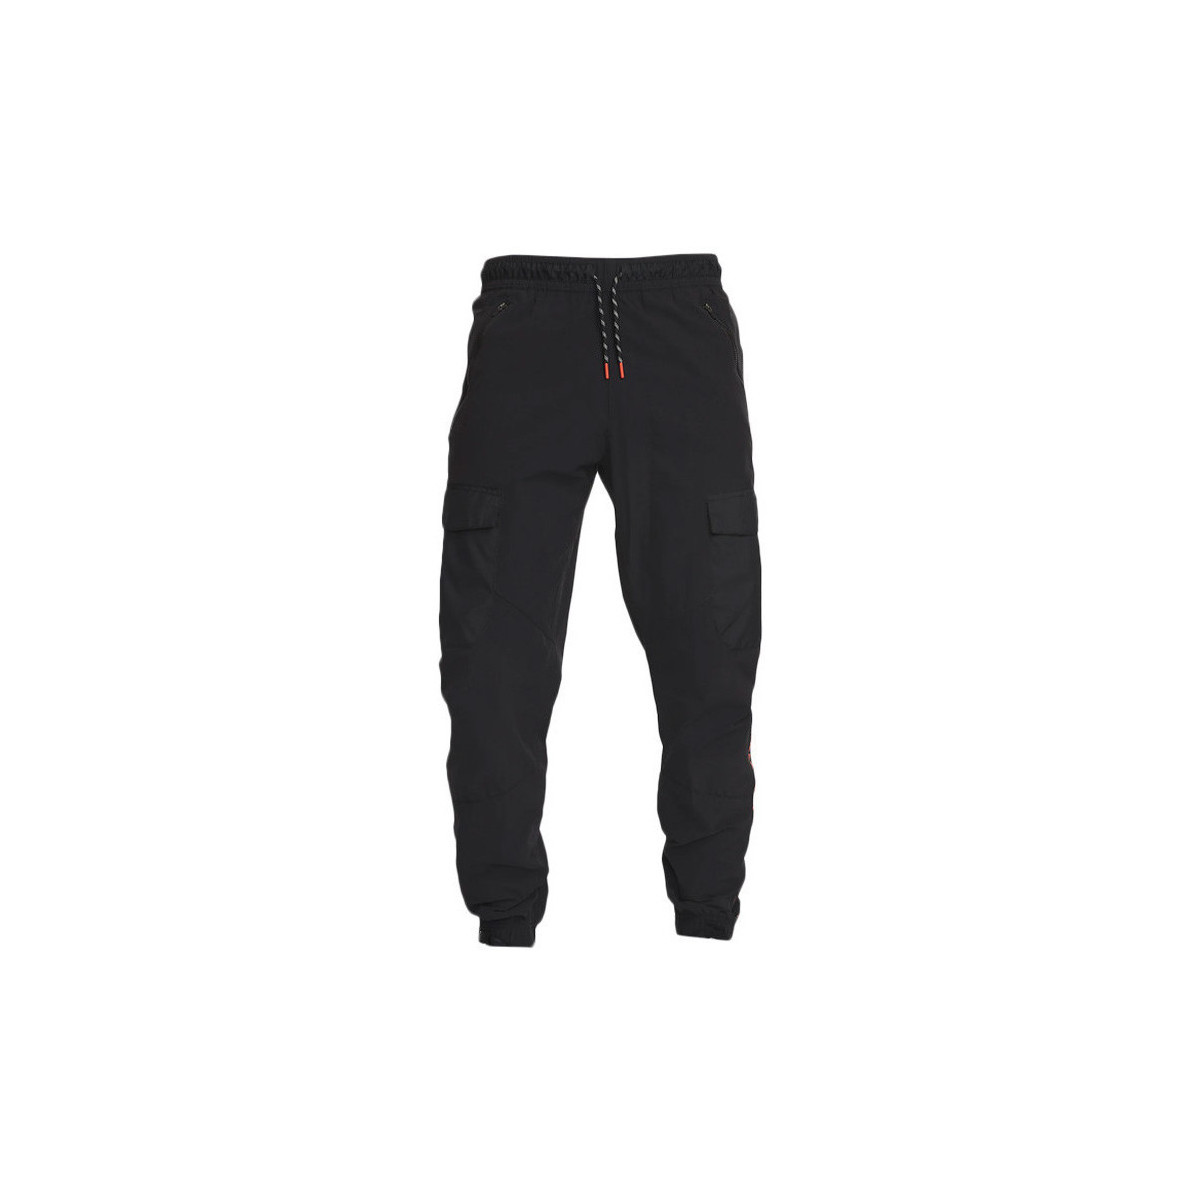 Vêtements Homme Pantalons de survêtement Nike AIRMAX WOGEN CARGO Noir